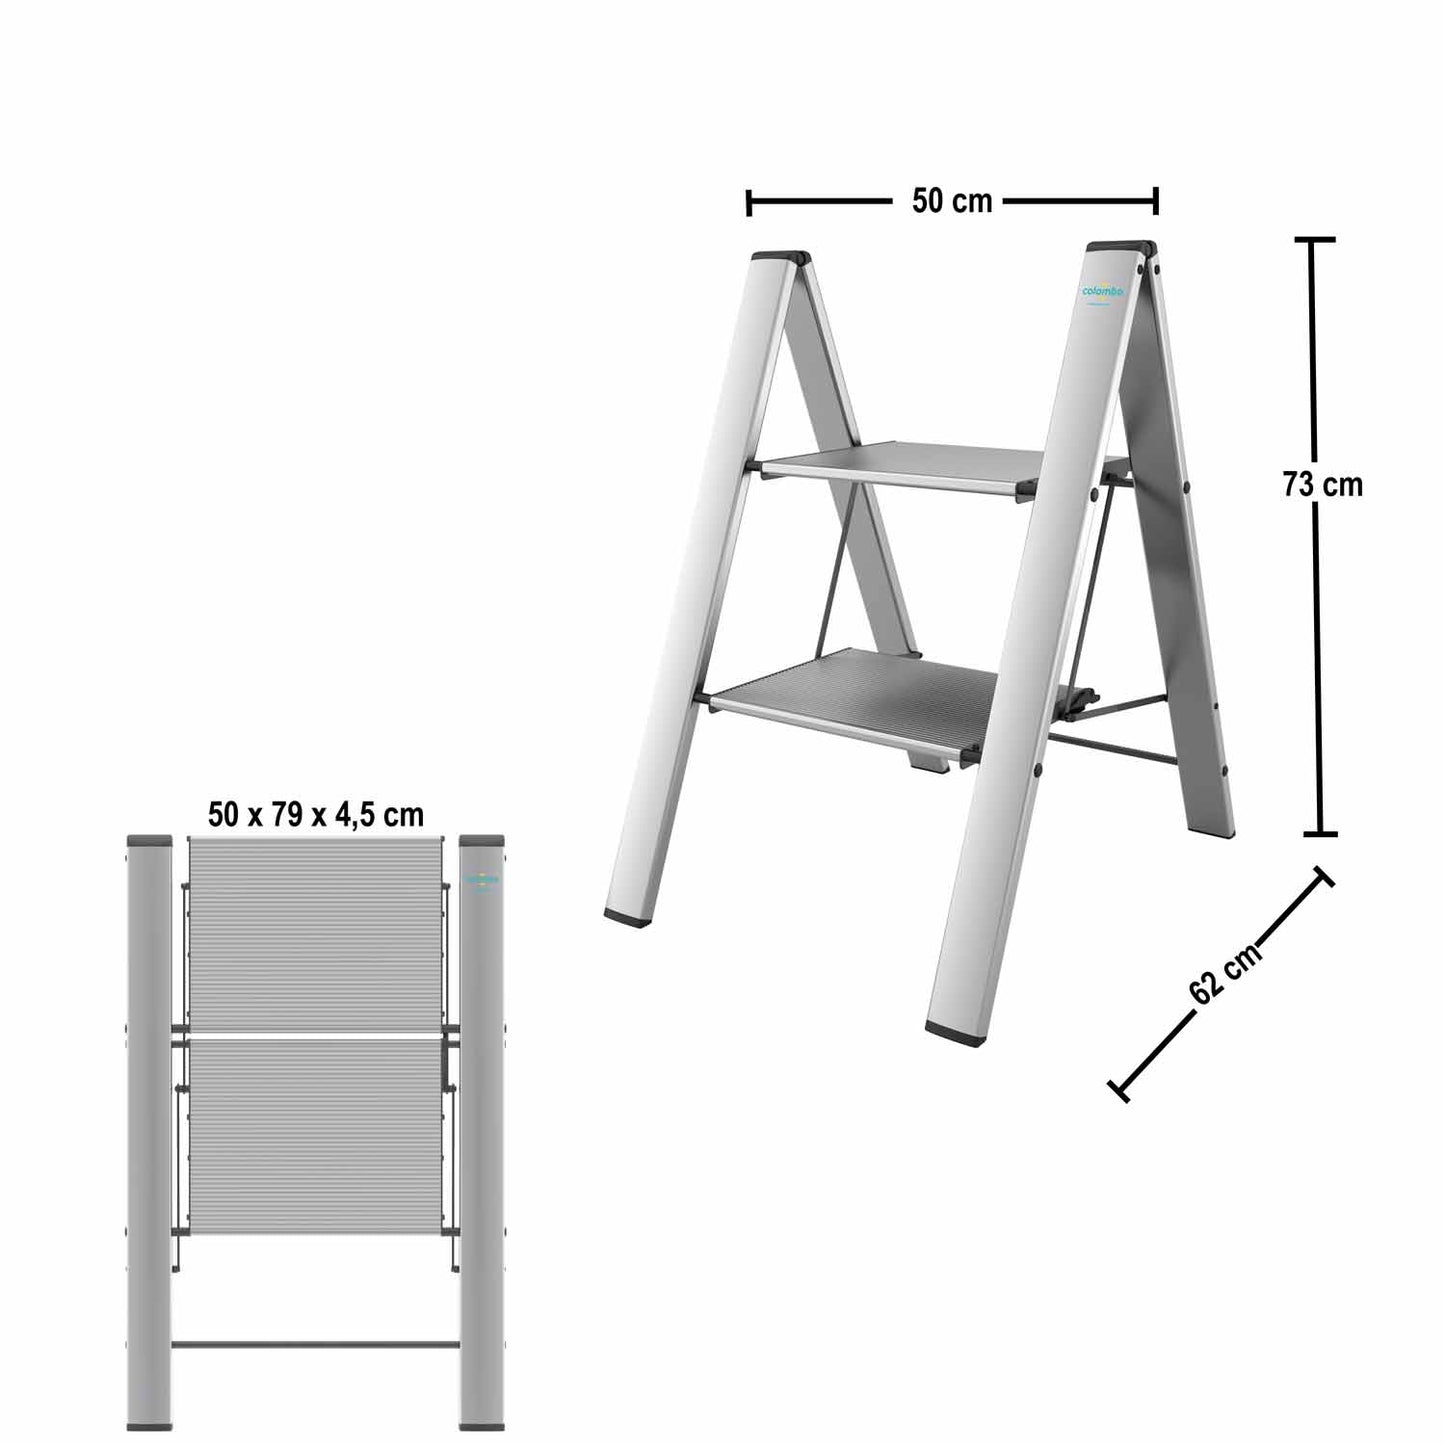 Colombo Leonardo 2 - Trittleiter, trittleiter 2 stufen, Kompakt klappbar auf 79x50x4,5 cm, 4,5 kg leicht